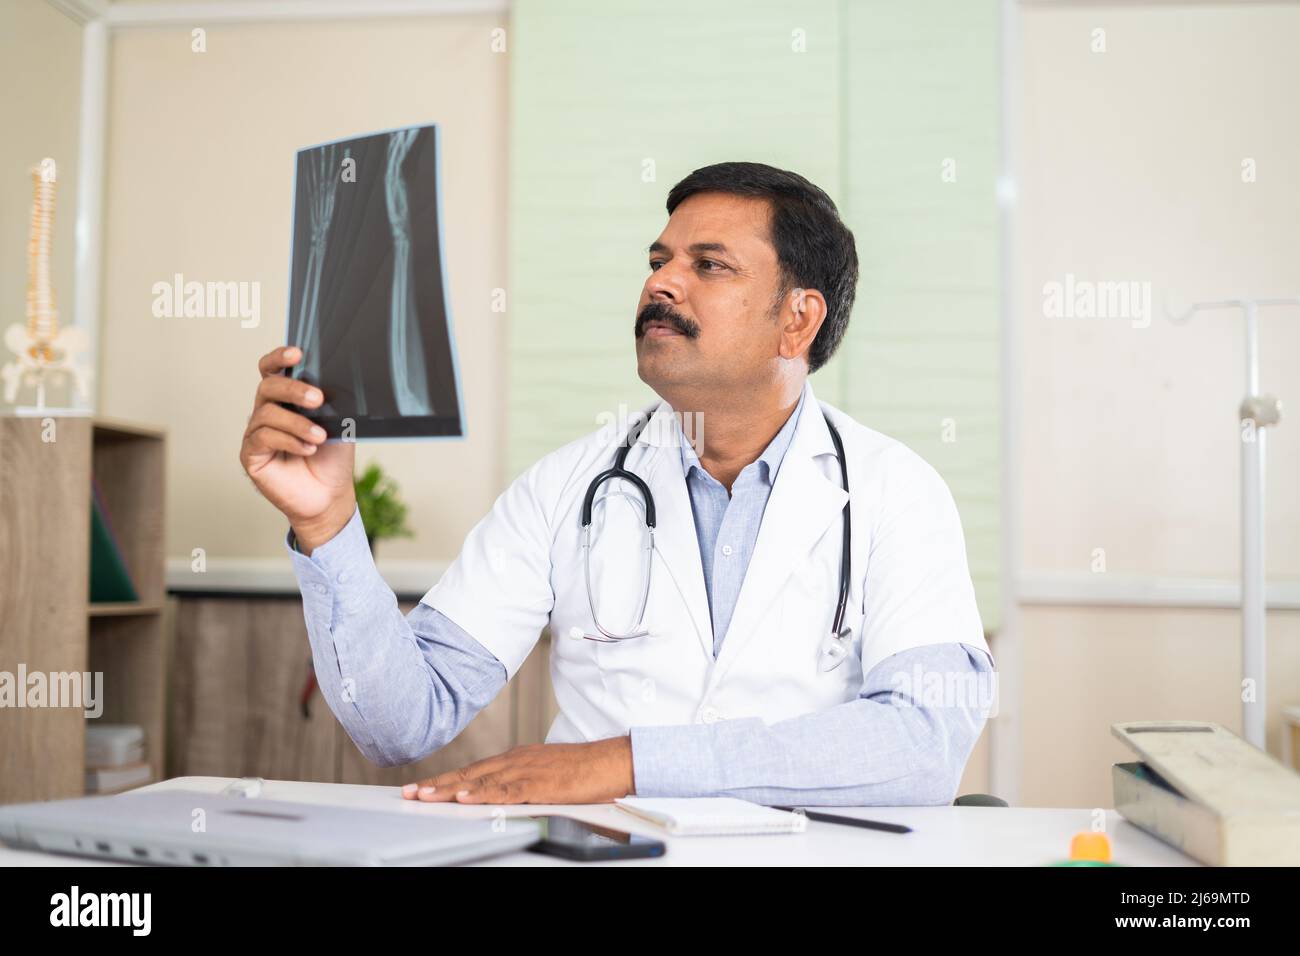 Arzt im Krankenhaus Analyse Röntgenbericht - Konzept der Gesundheitsversorgung, Beruf und medizinische Expertise Stockfoto